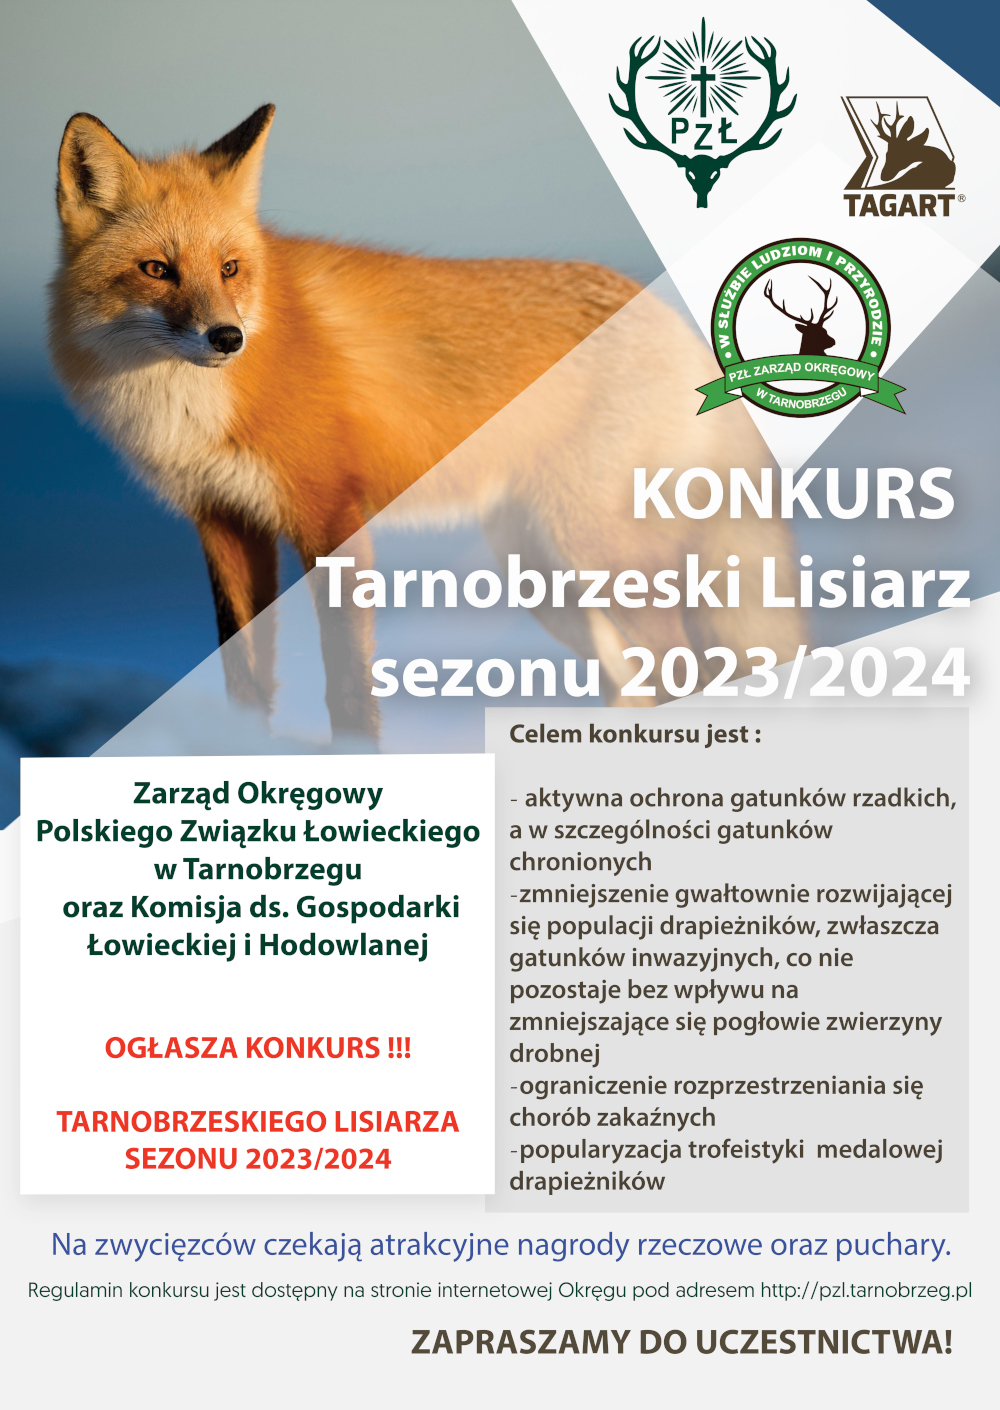 KONKURS-TARNOBRZESKI LISIARZ SEZONU 2023/2024